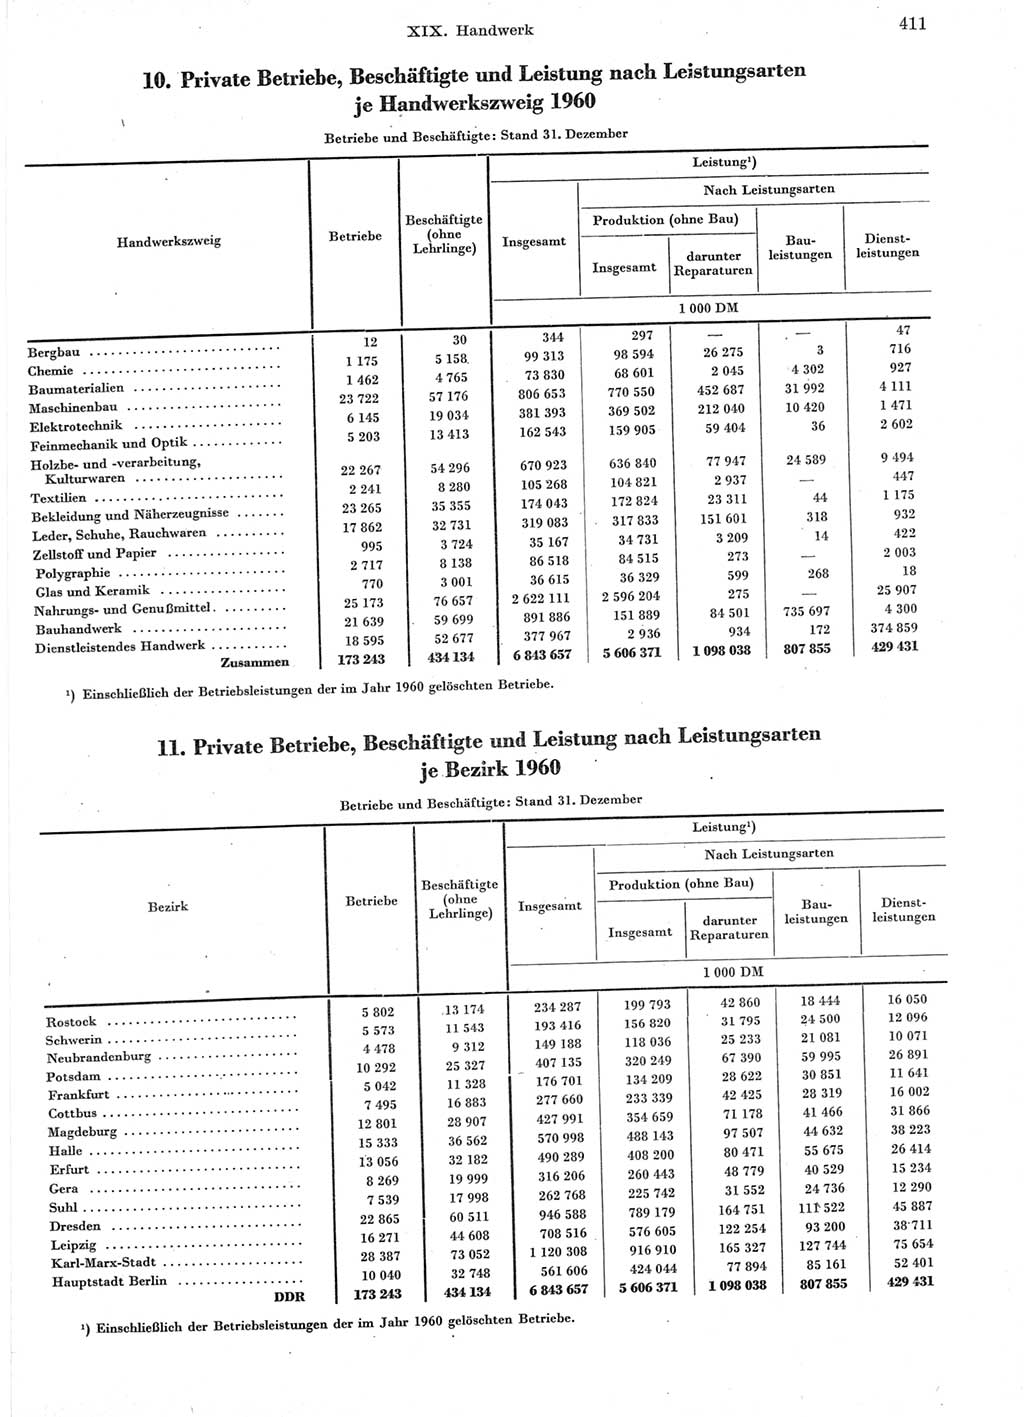 Statistisches Jahrbuch der Deutschen Demokratischen Republik (DDR) 1960-1961, Seite 411 (Stat. Jb. DDR 1960-1961, S. 411)